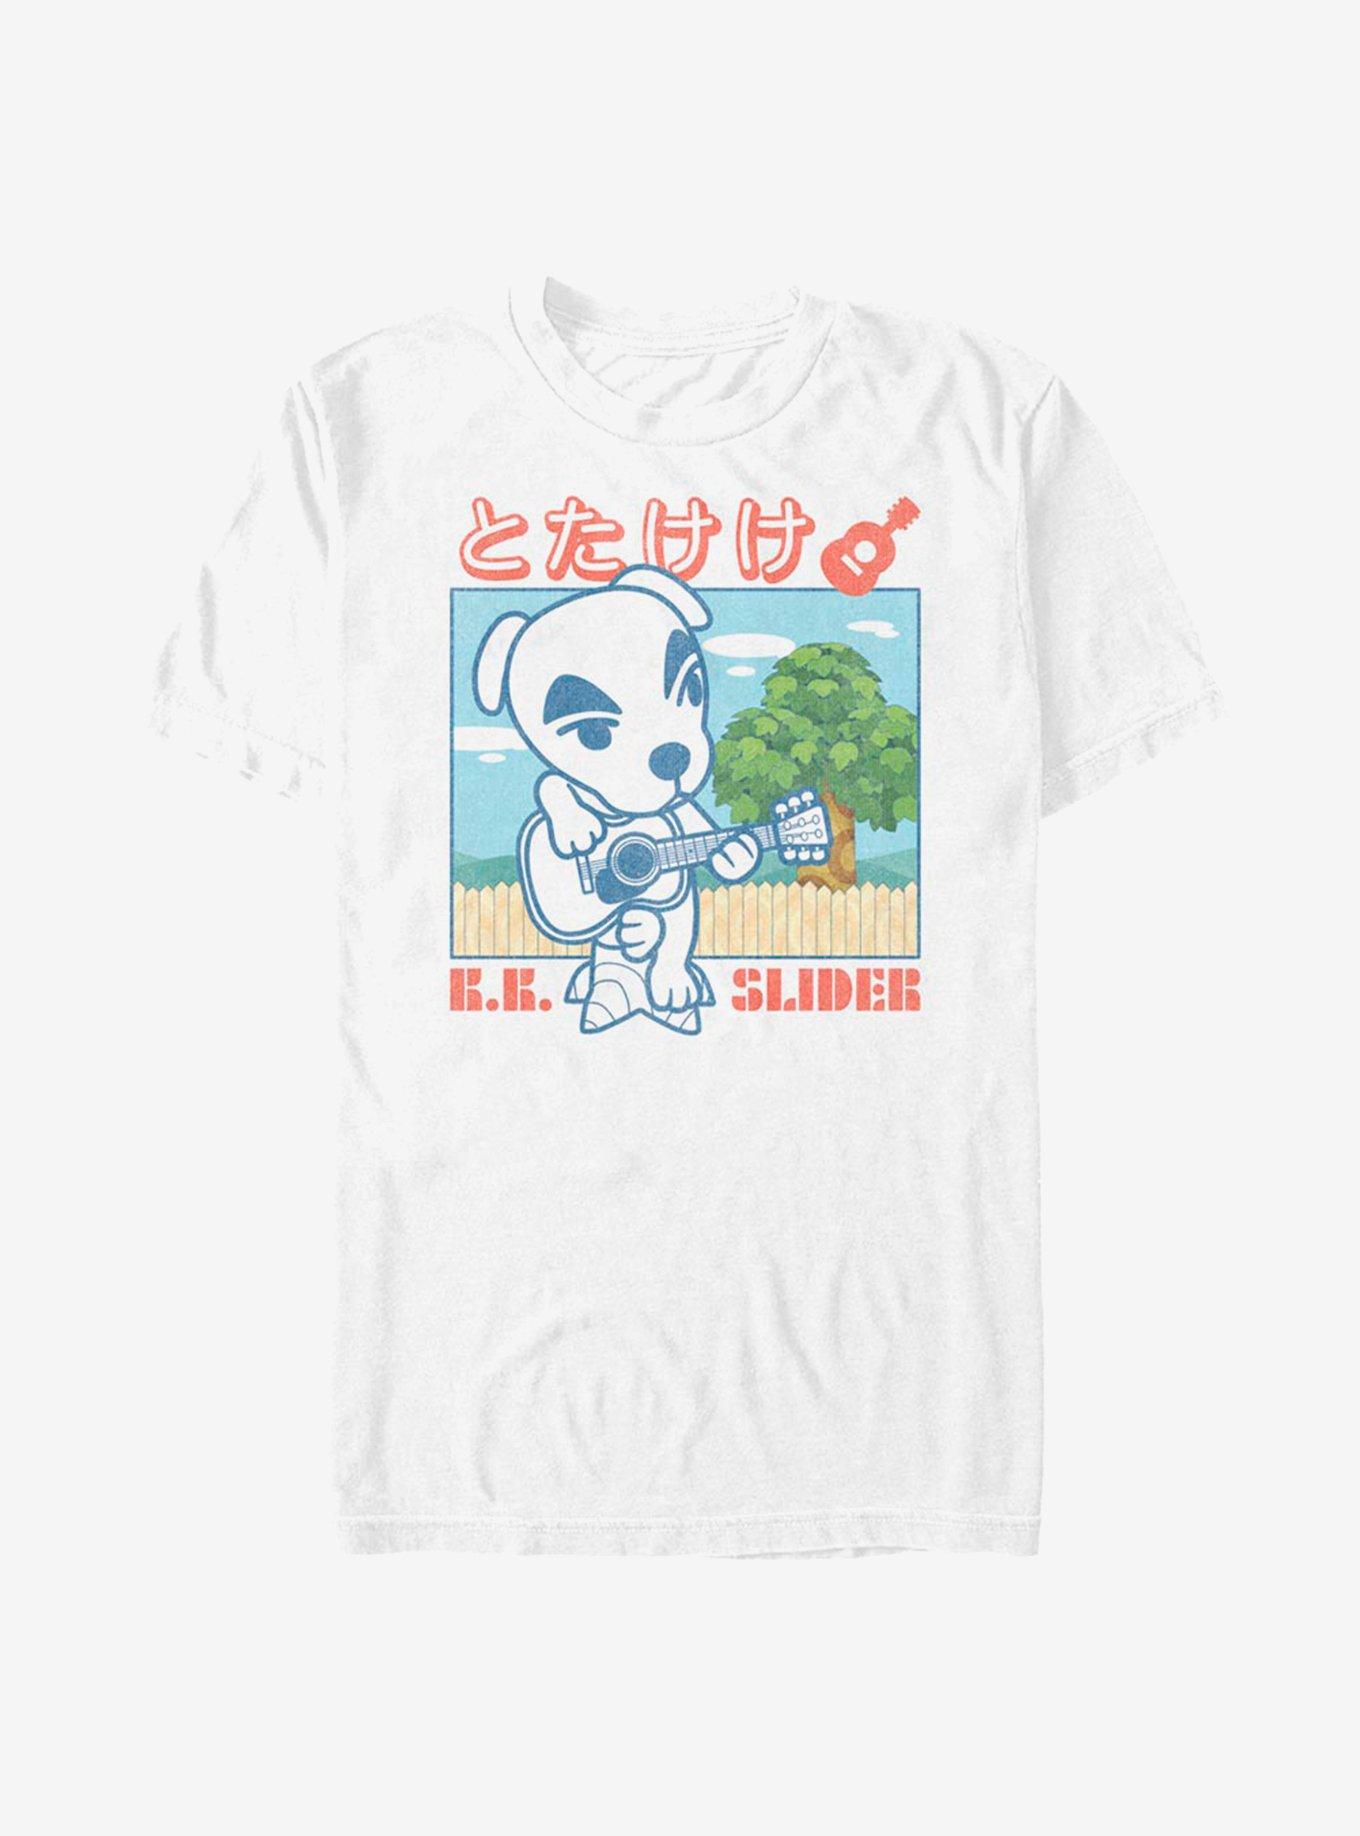 Animal Crossing Totakeke T-Shirt, , hi-res